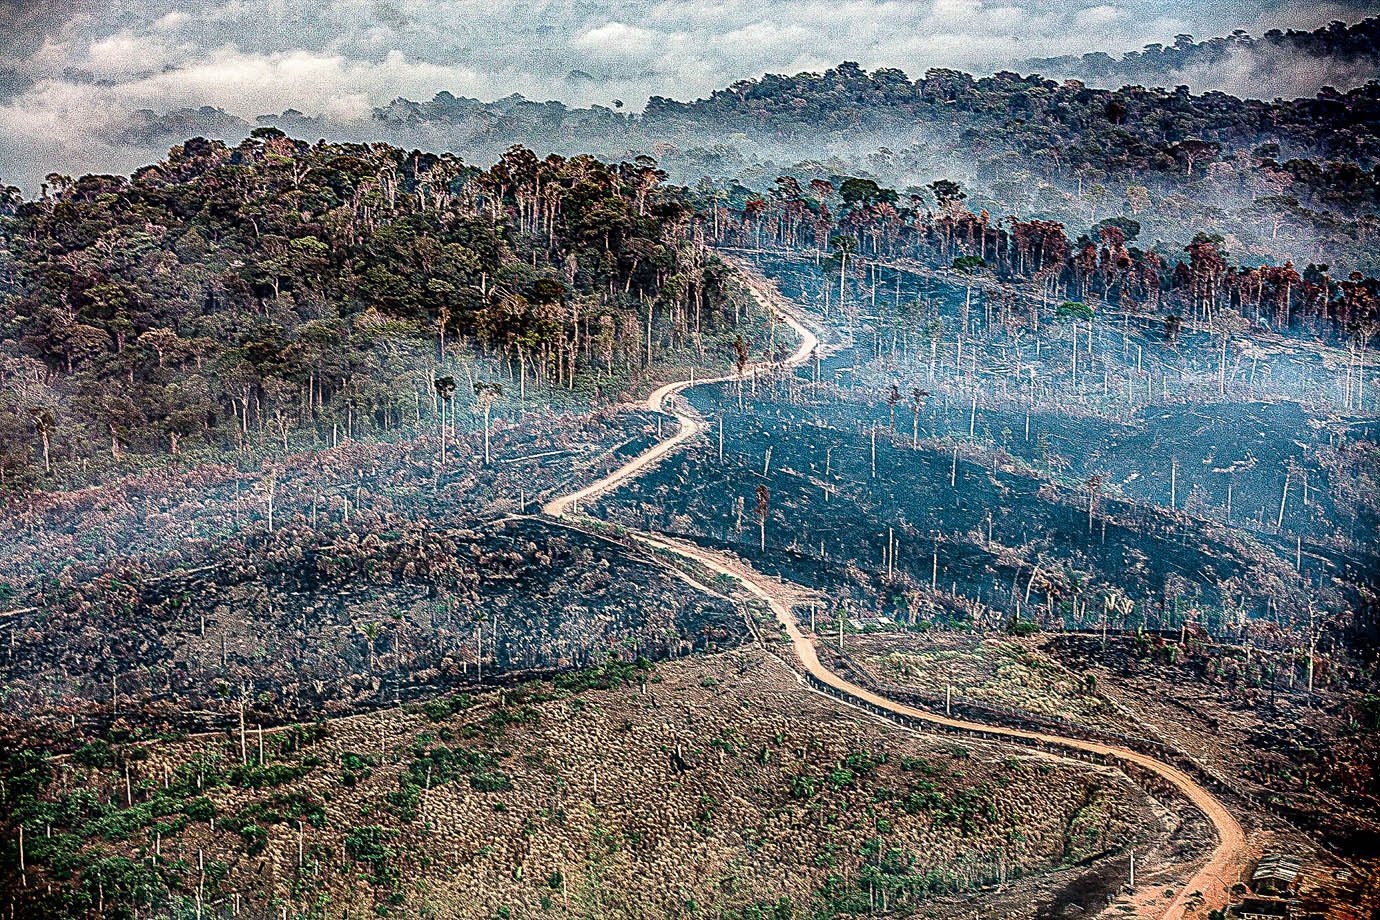 Sobrevoo na região sudoeste do Pará e detectou focos de fogo, desmatamento e garimpo em unidades de conservação. Nesta foto, fogo no município de Trairão. (Foto Marizilda Cruppe/Amazônia Real/Amazon Watch/17/09/2020)